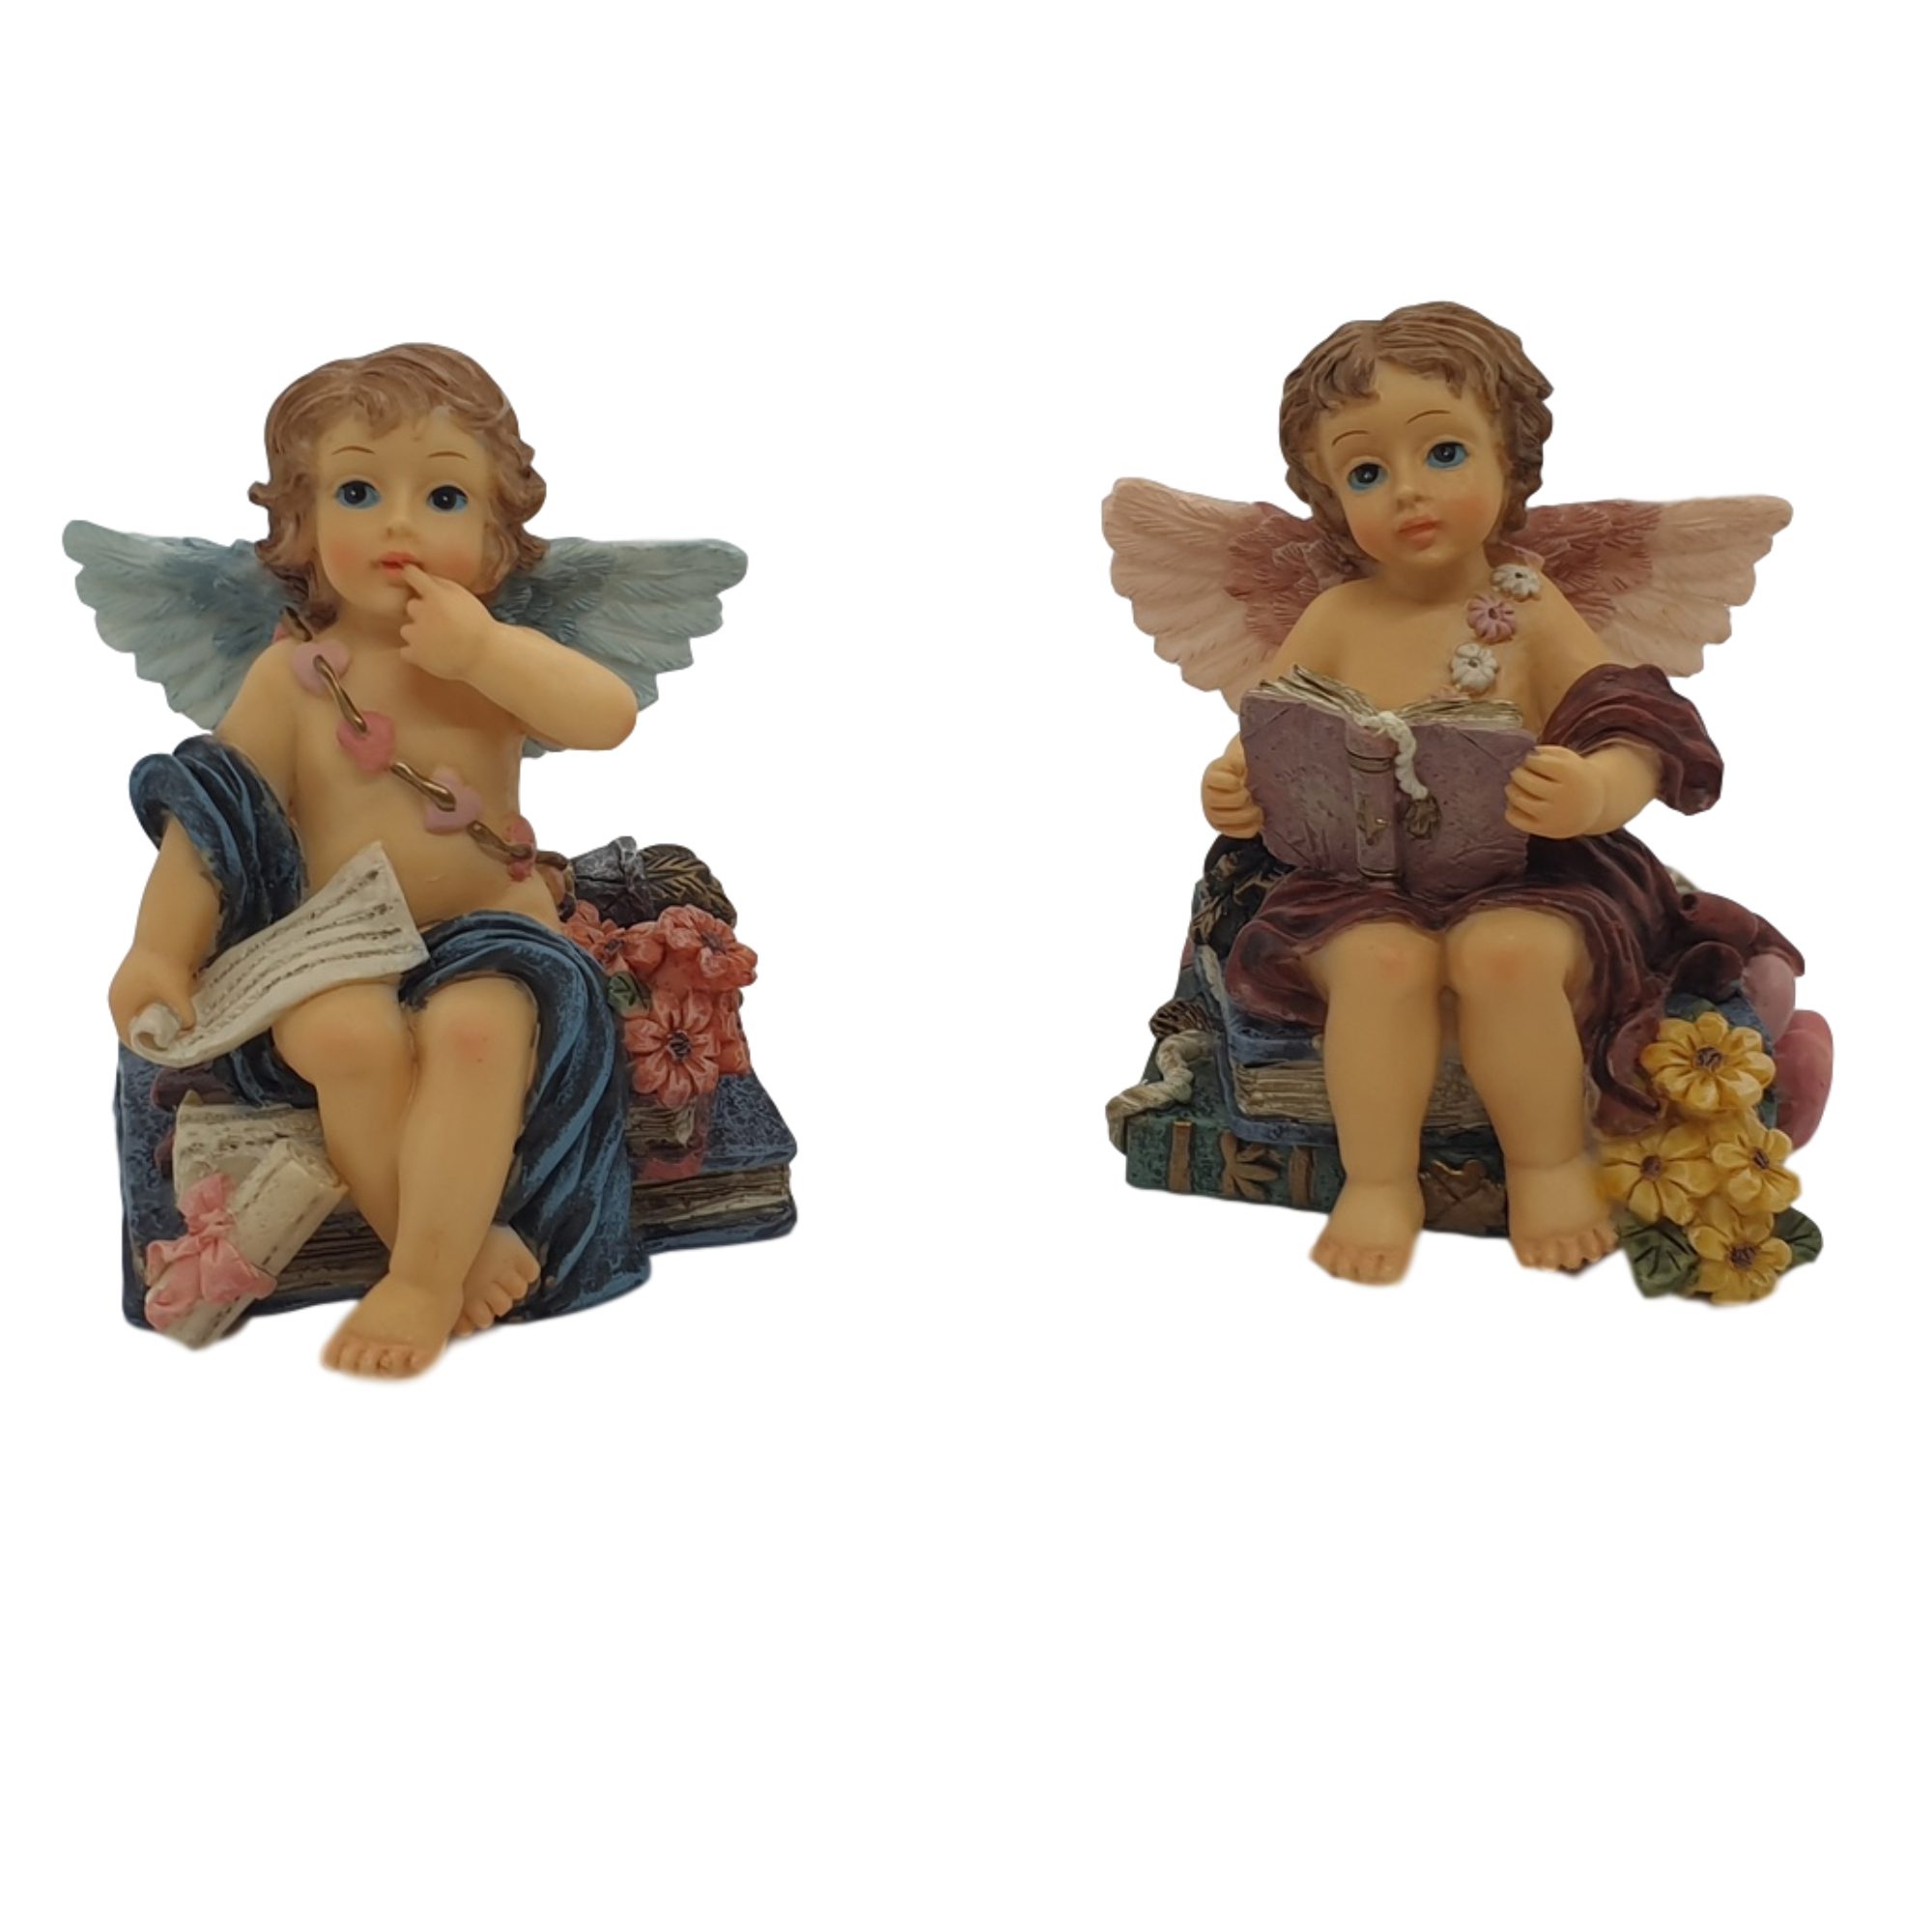 Petulance astronomie nemen Engel beeldje met vleugels – set van 2 decoratie engelenbeeldjes 9 cm hoog  polyresin materiaal | GerichteKeuze - ThuisindeTuin.nl